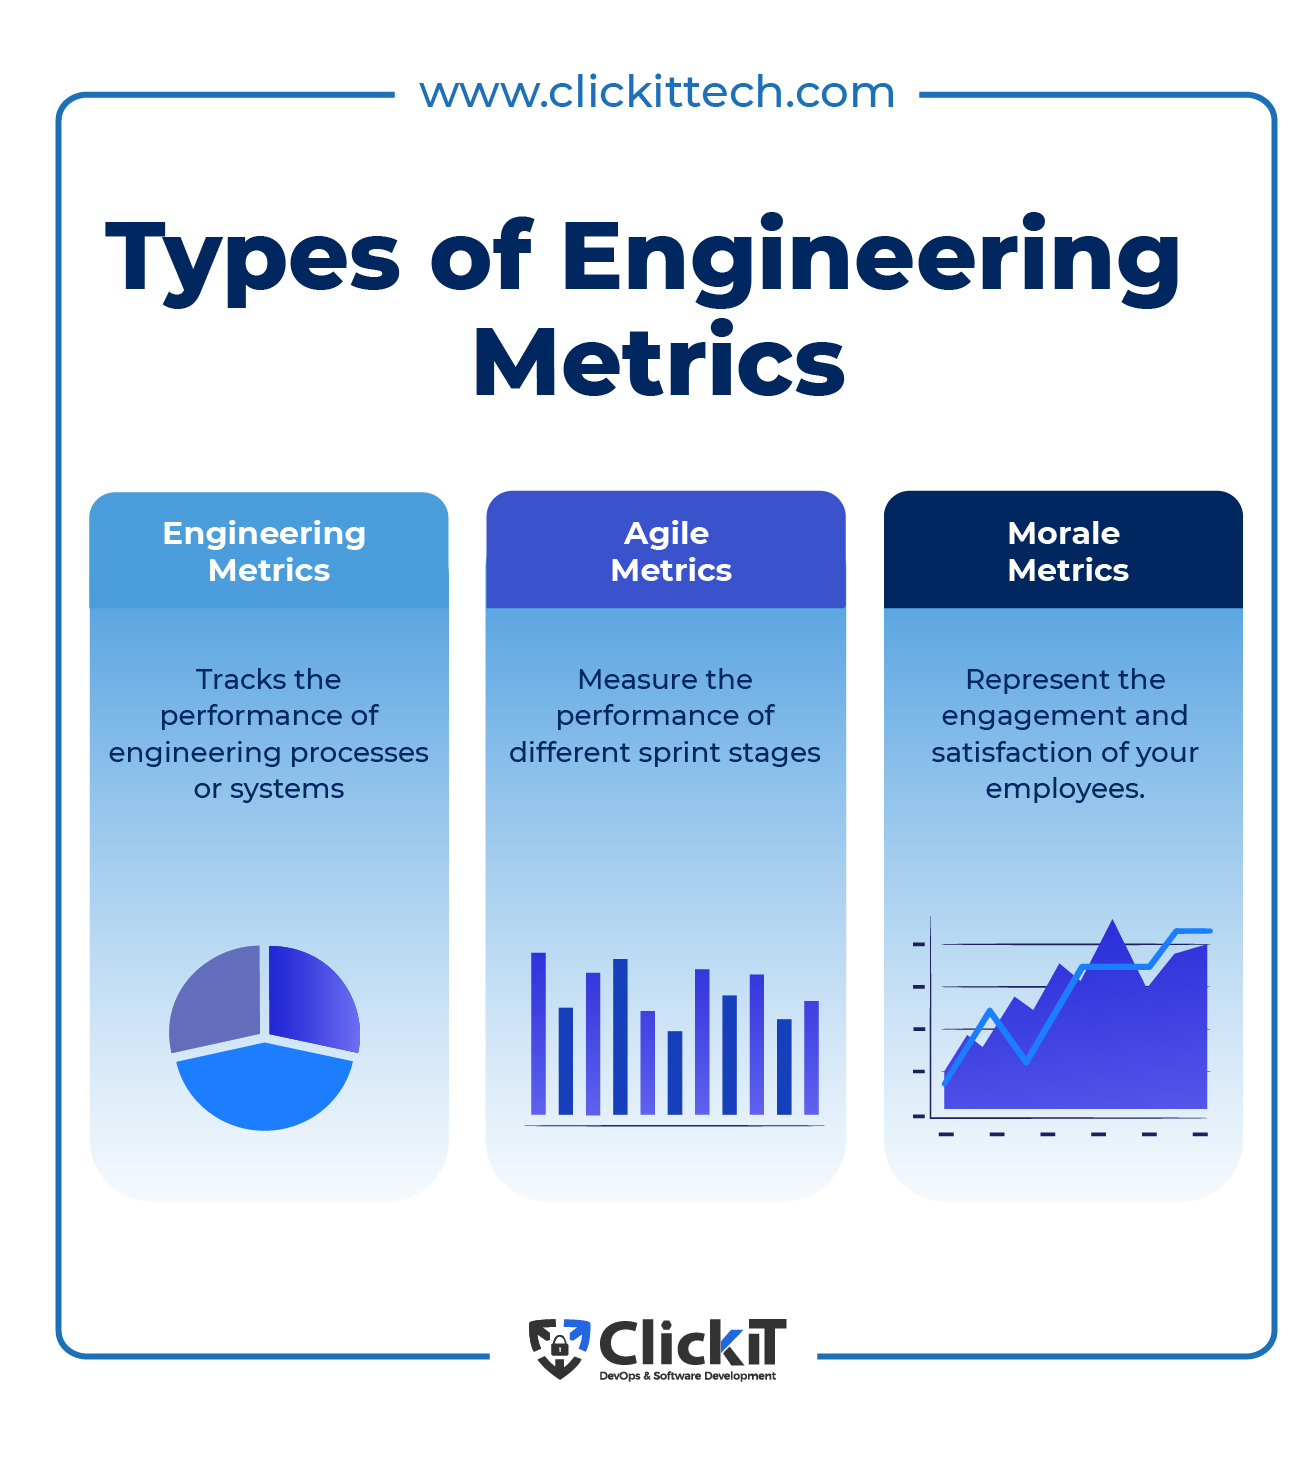 Metrics in Engineering - Metric Gears